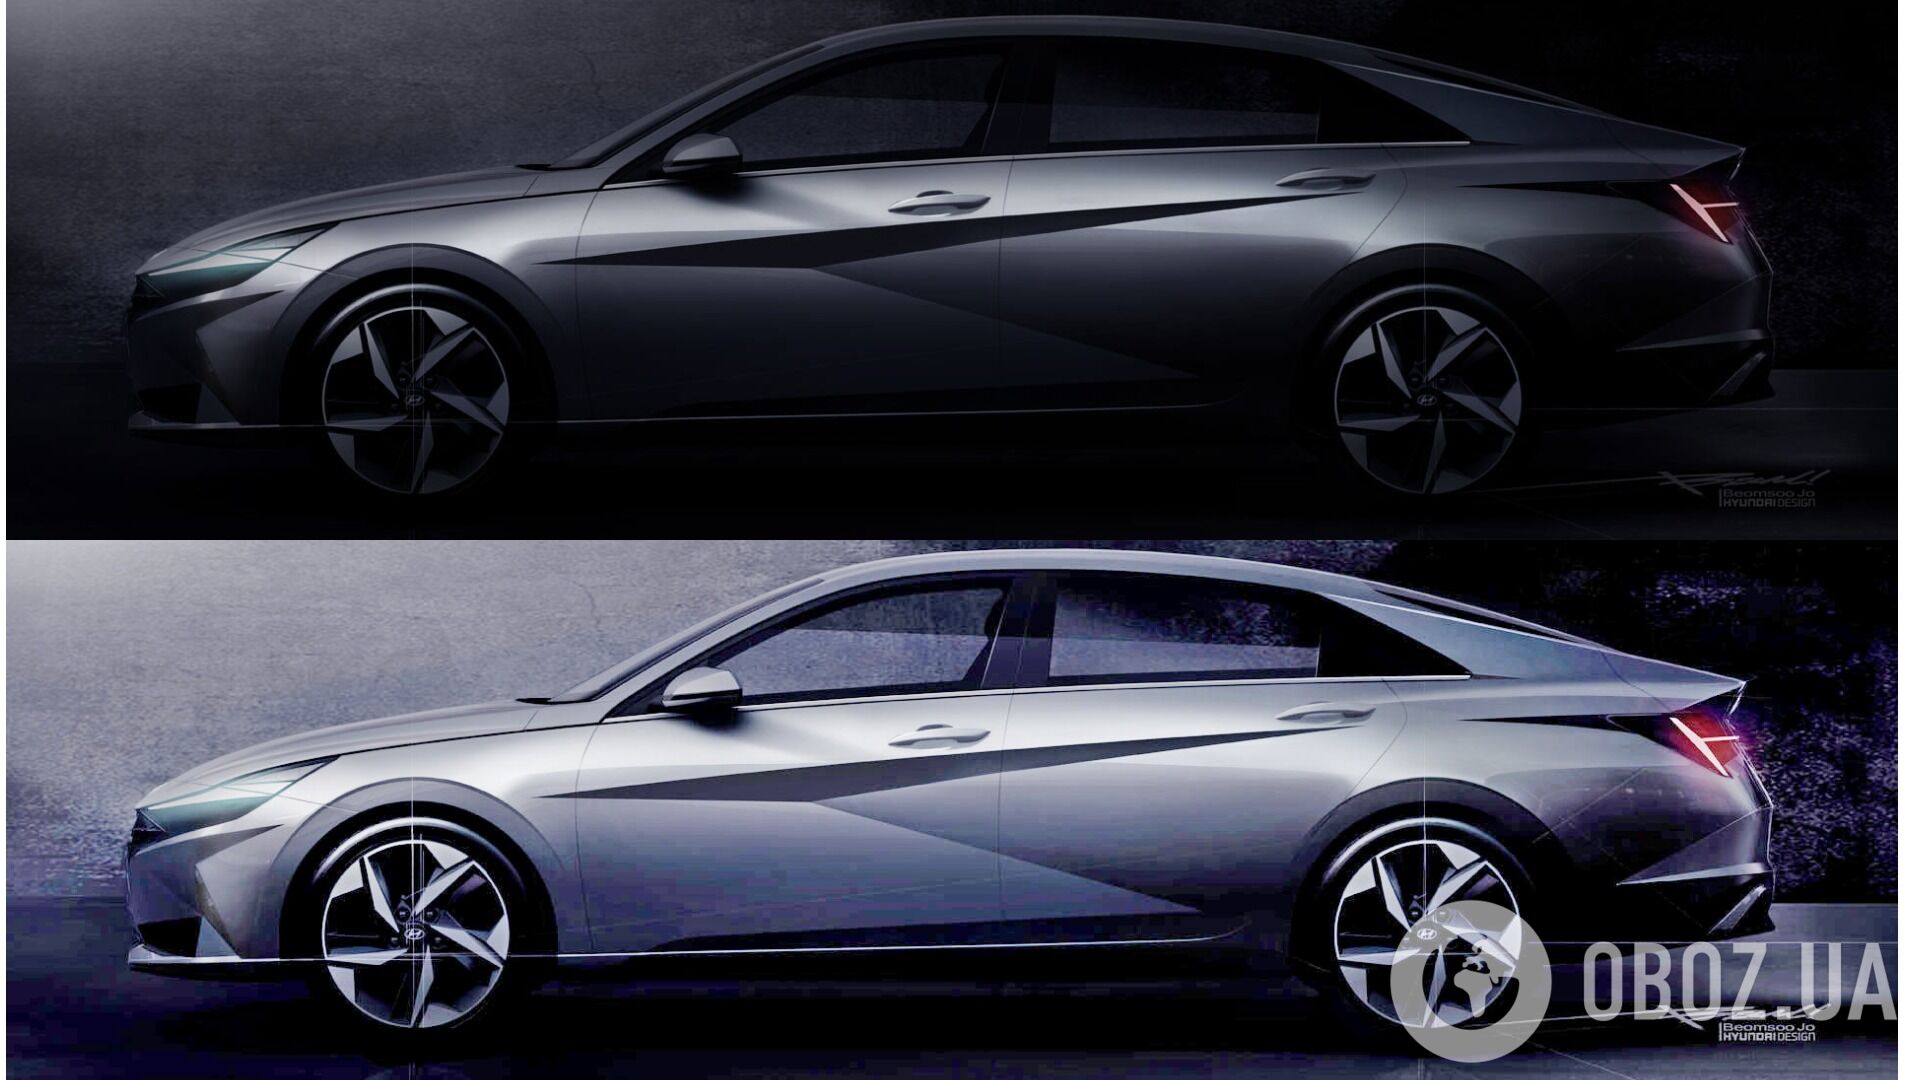 Мы обработали изображение Hyundai Elantra 2021, чтобы увидеть больше – облик нового седана больше не секрет!